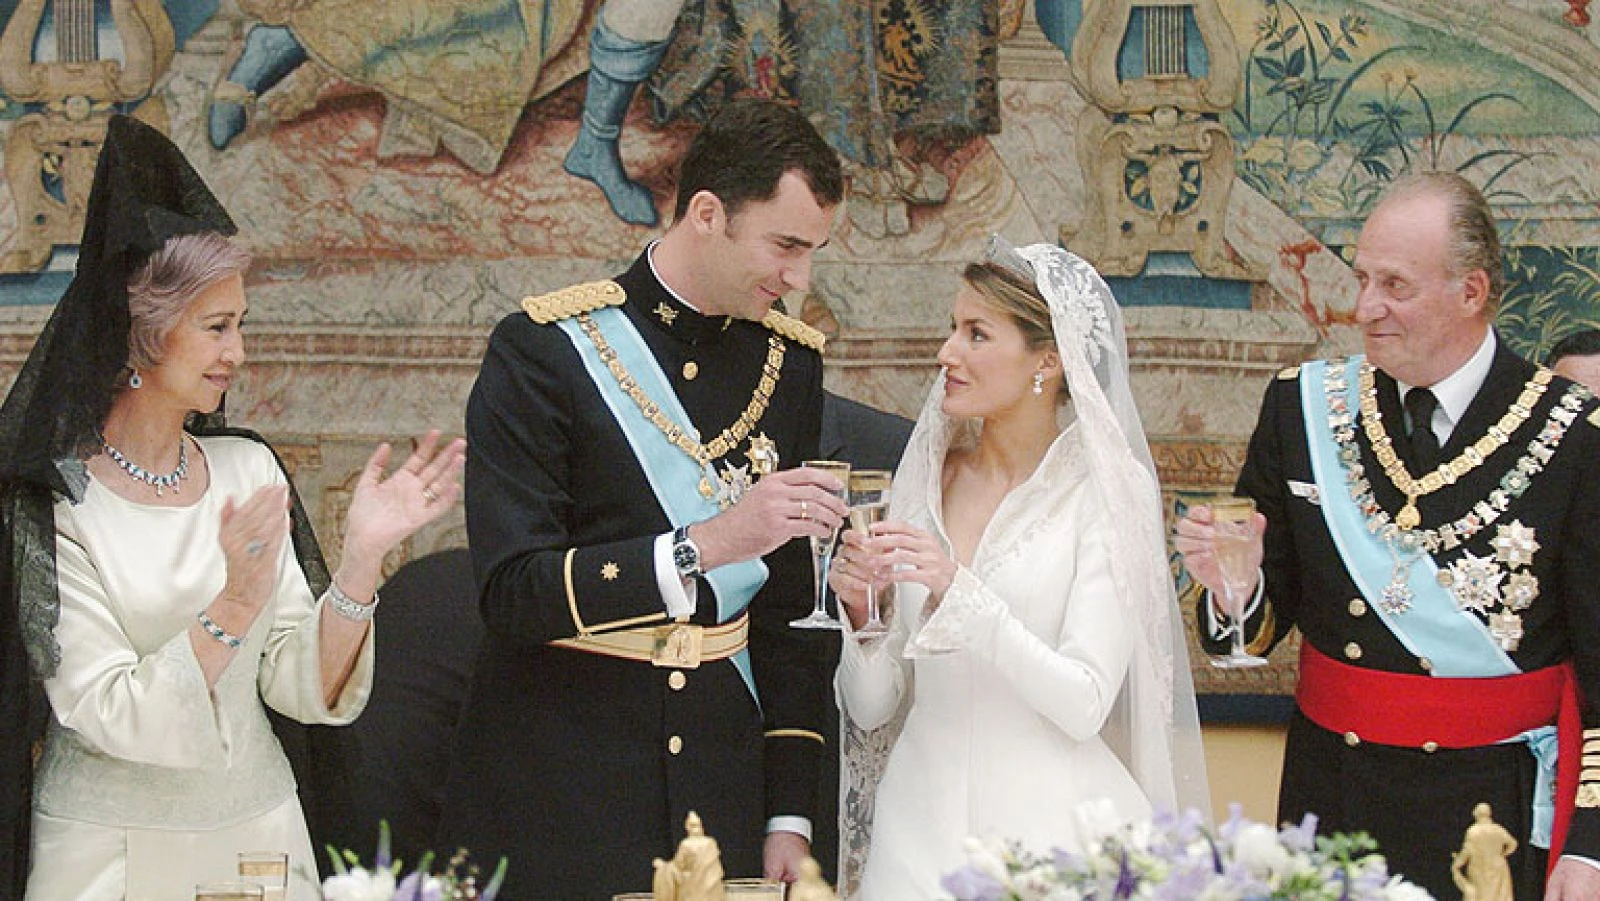 El casamiento de Letizia y Felipe. 